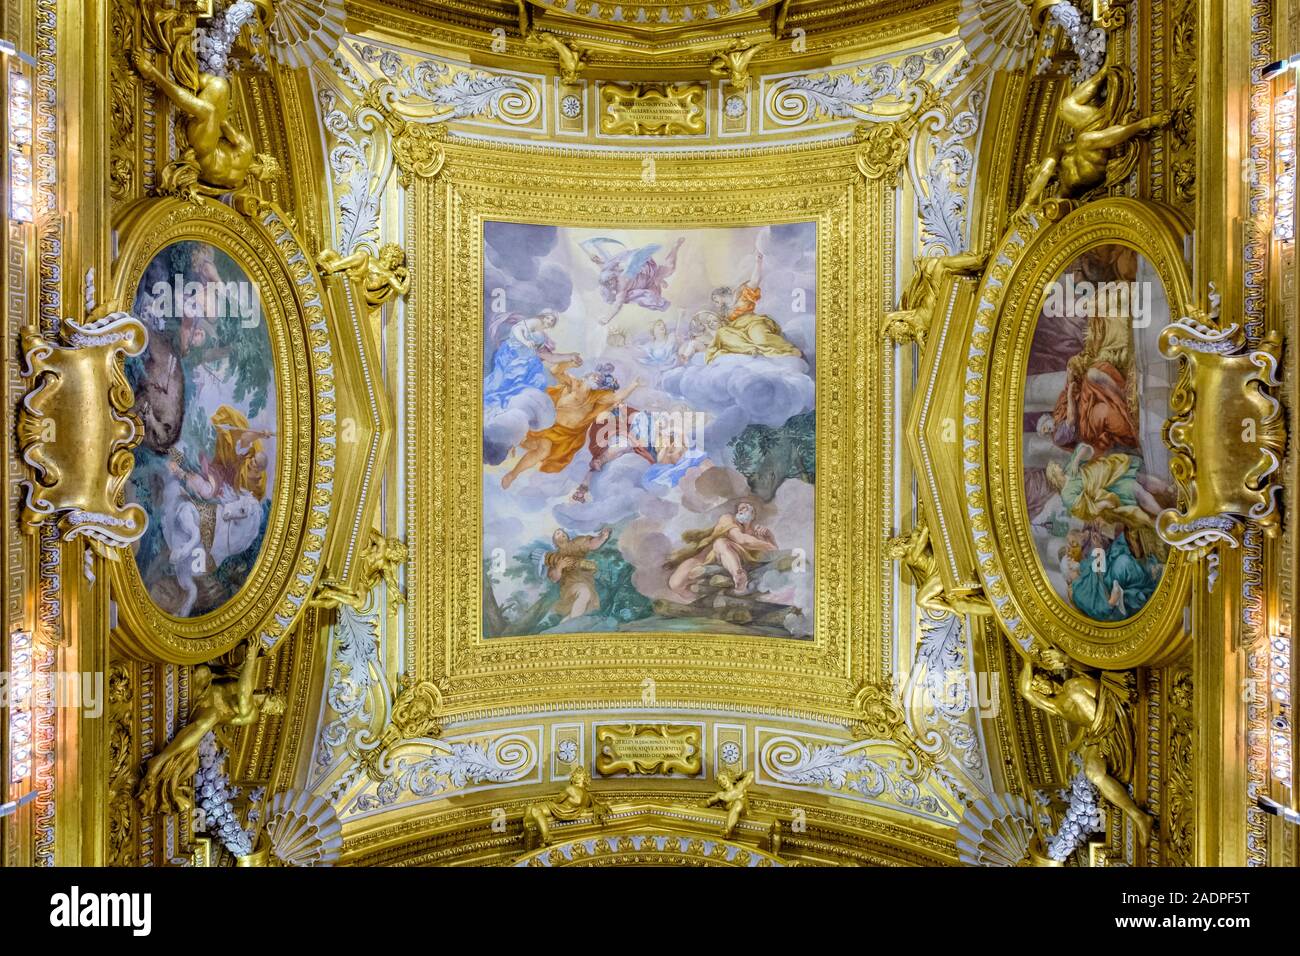 Fresques au plafond dans la Sala di Saturno (Saturne) au Palazzo dei Congressi (Palais Pitti), Florence (Firenze), Toscane, Italie, Europe. Banque D'Images